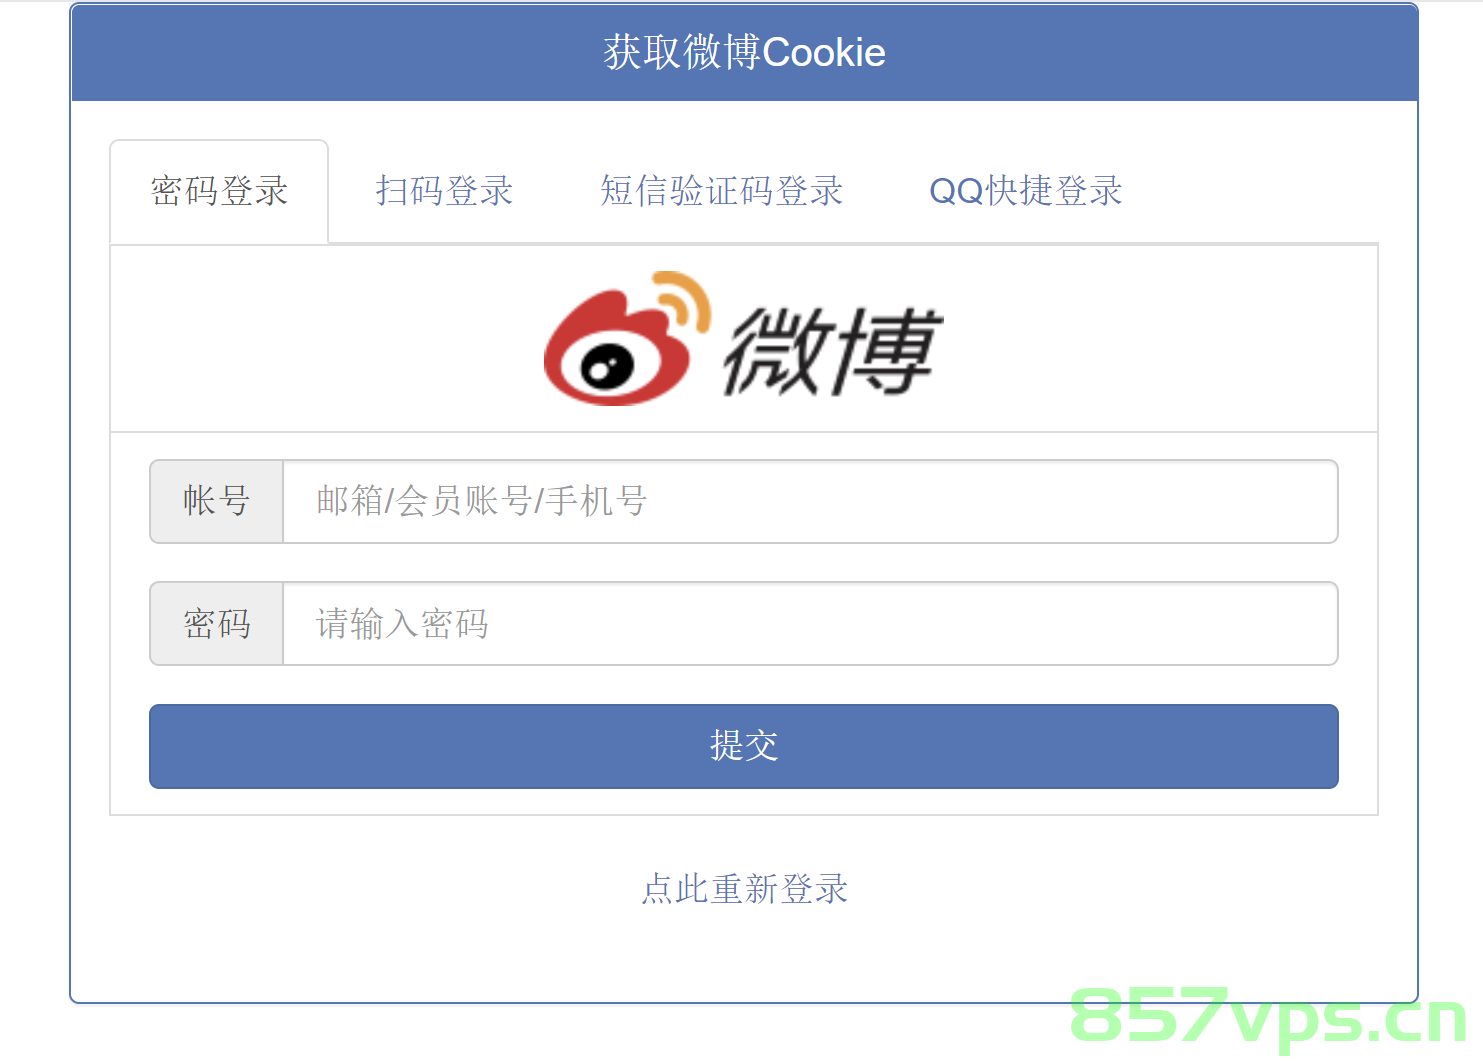 在线获取微博Cookie源码 支持4种登录方式,QQ截图20220807122159.png,微博,cookie,php,源码,第1张